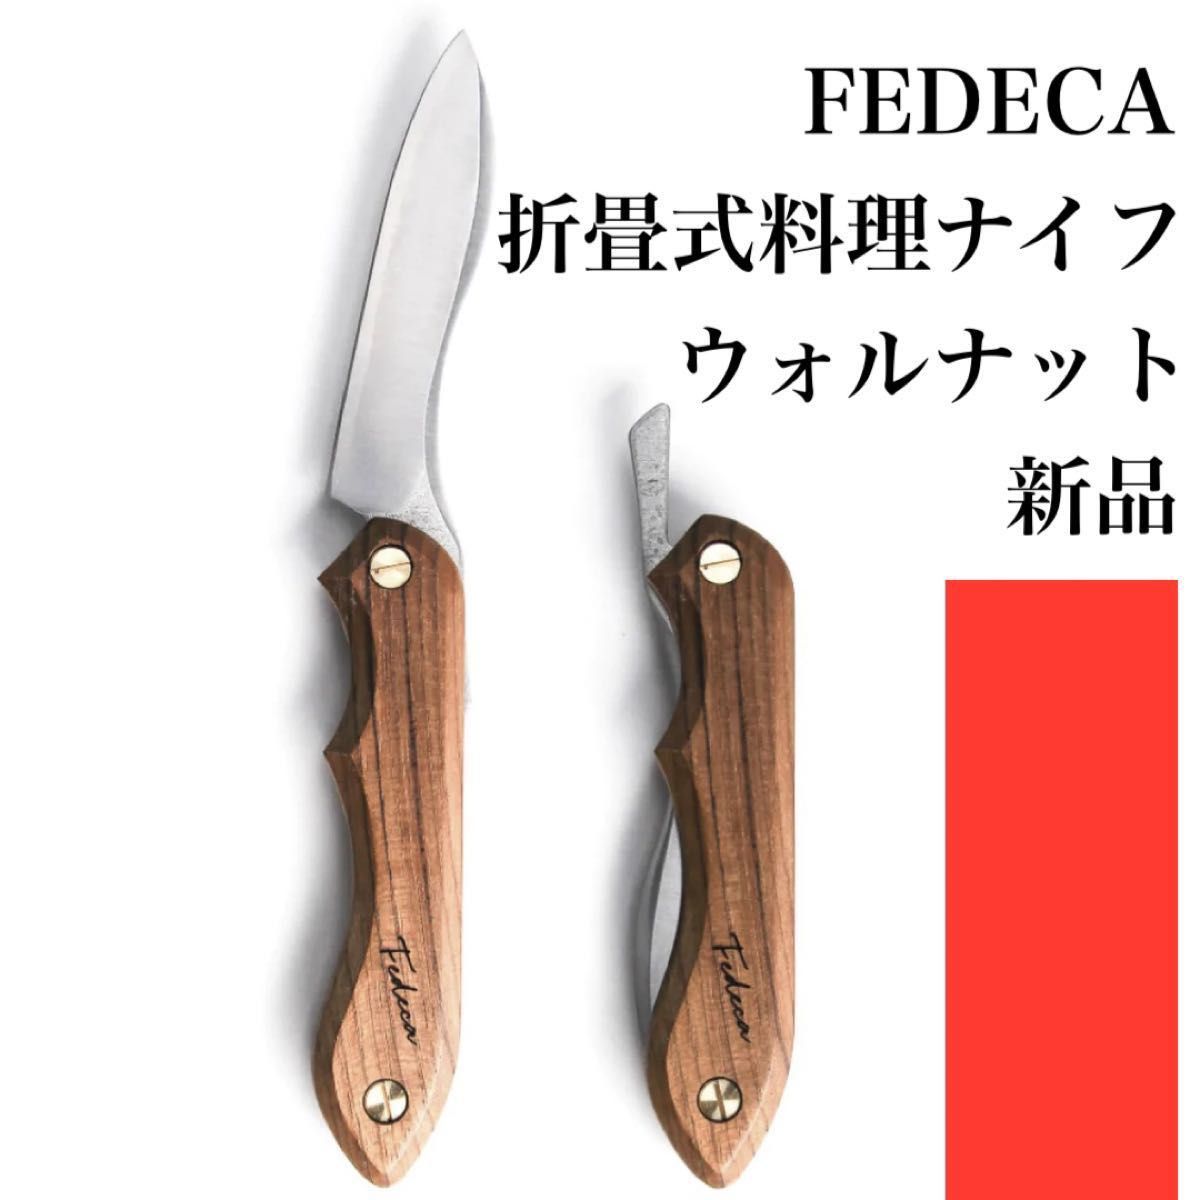 ベビーグッズも大集合 FEDECA フェデカ ナイフ メーサーバーチ ナイフ